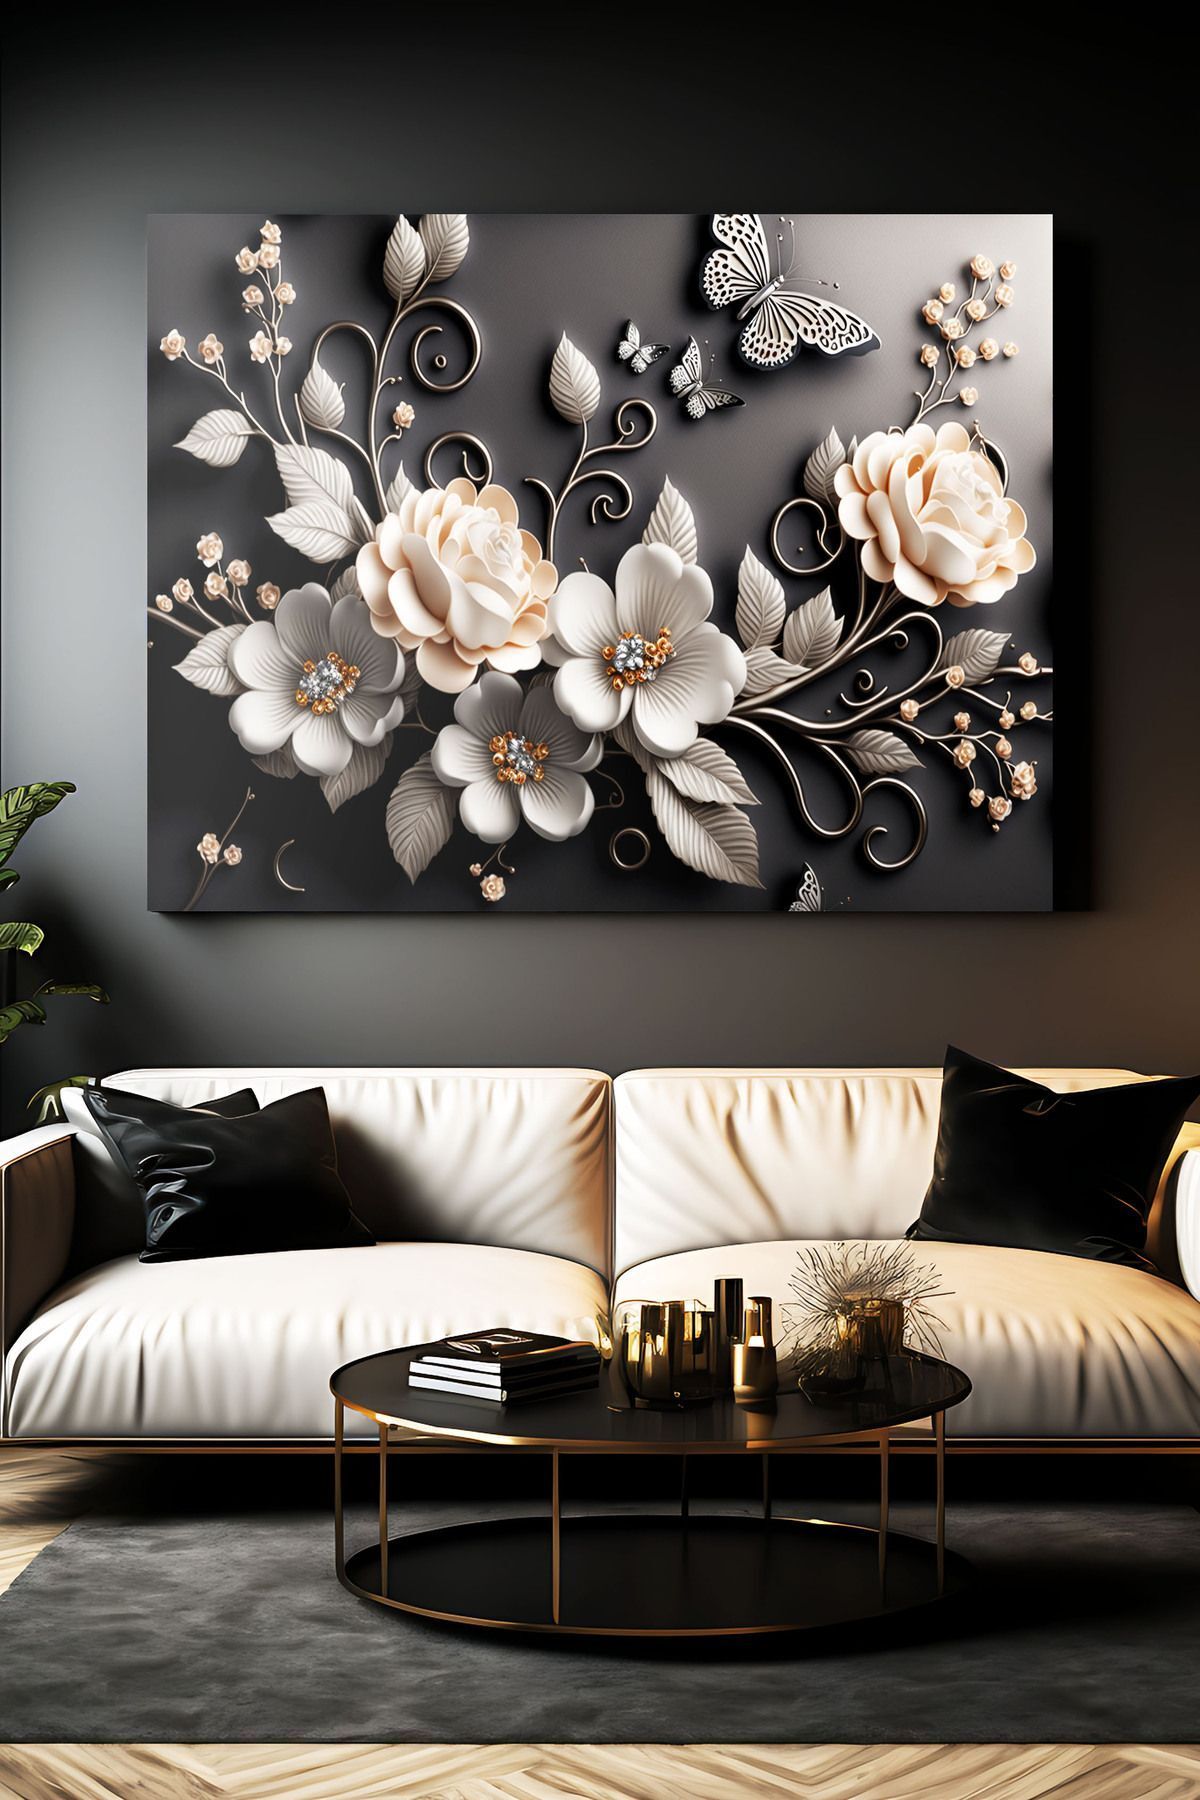 212shop Özel Tasarım 3 Boyutlu Lüks Siyah Çiçekler Dekoratif Kanvas Duvar Tablo